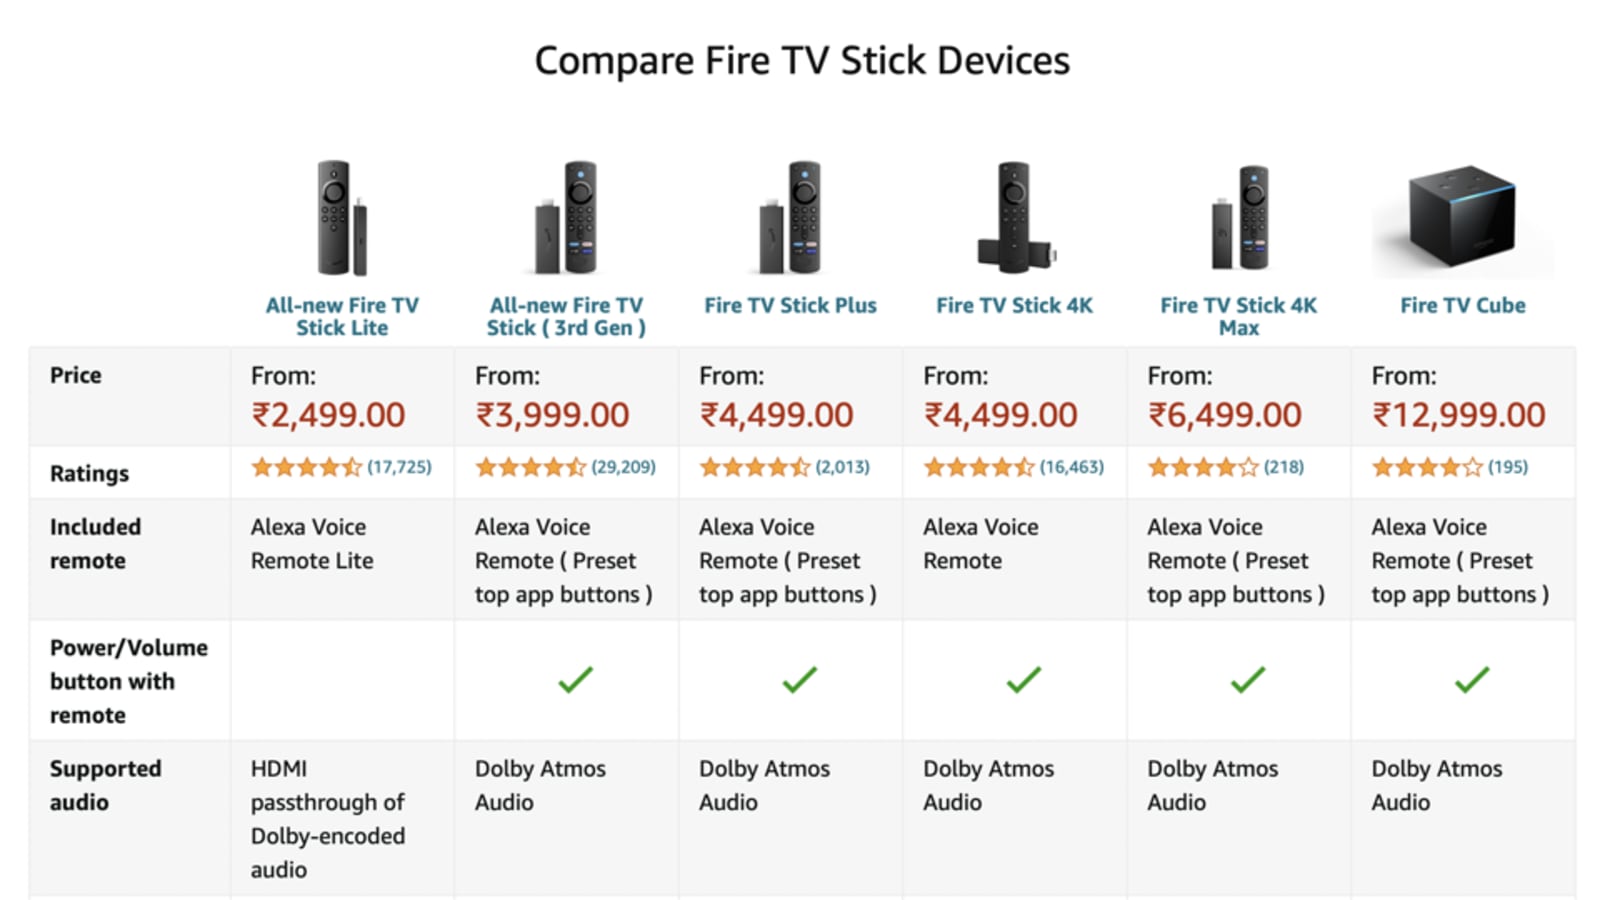 Fire TV Stick 4K Max vs Fire TV Cube - My Site